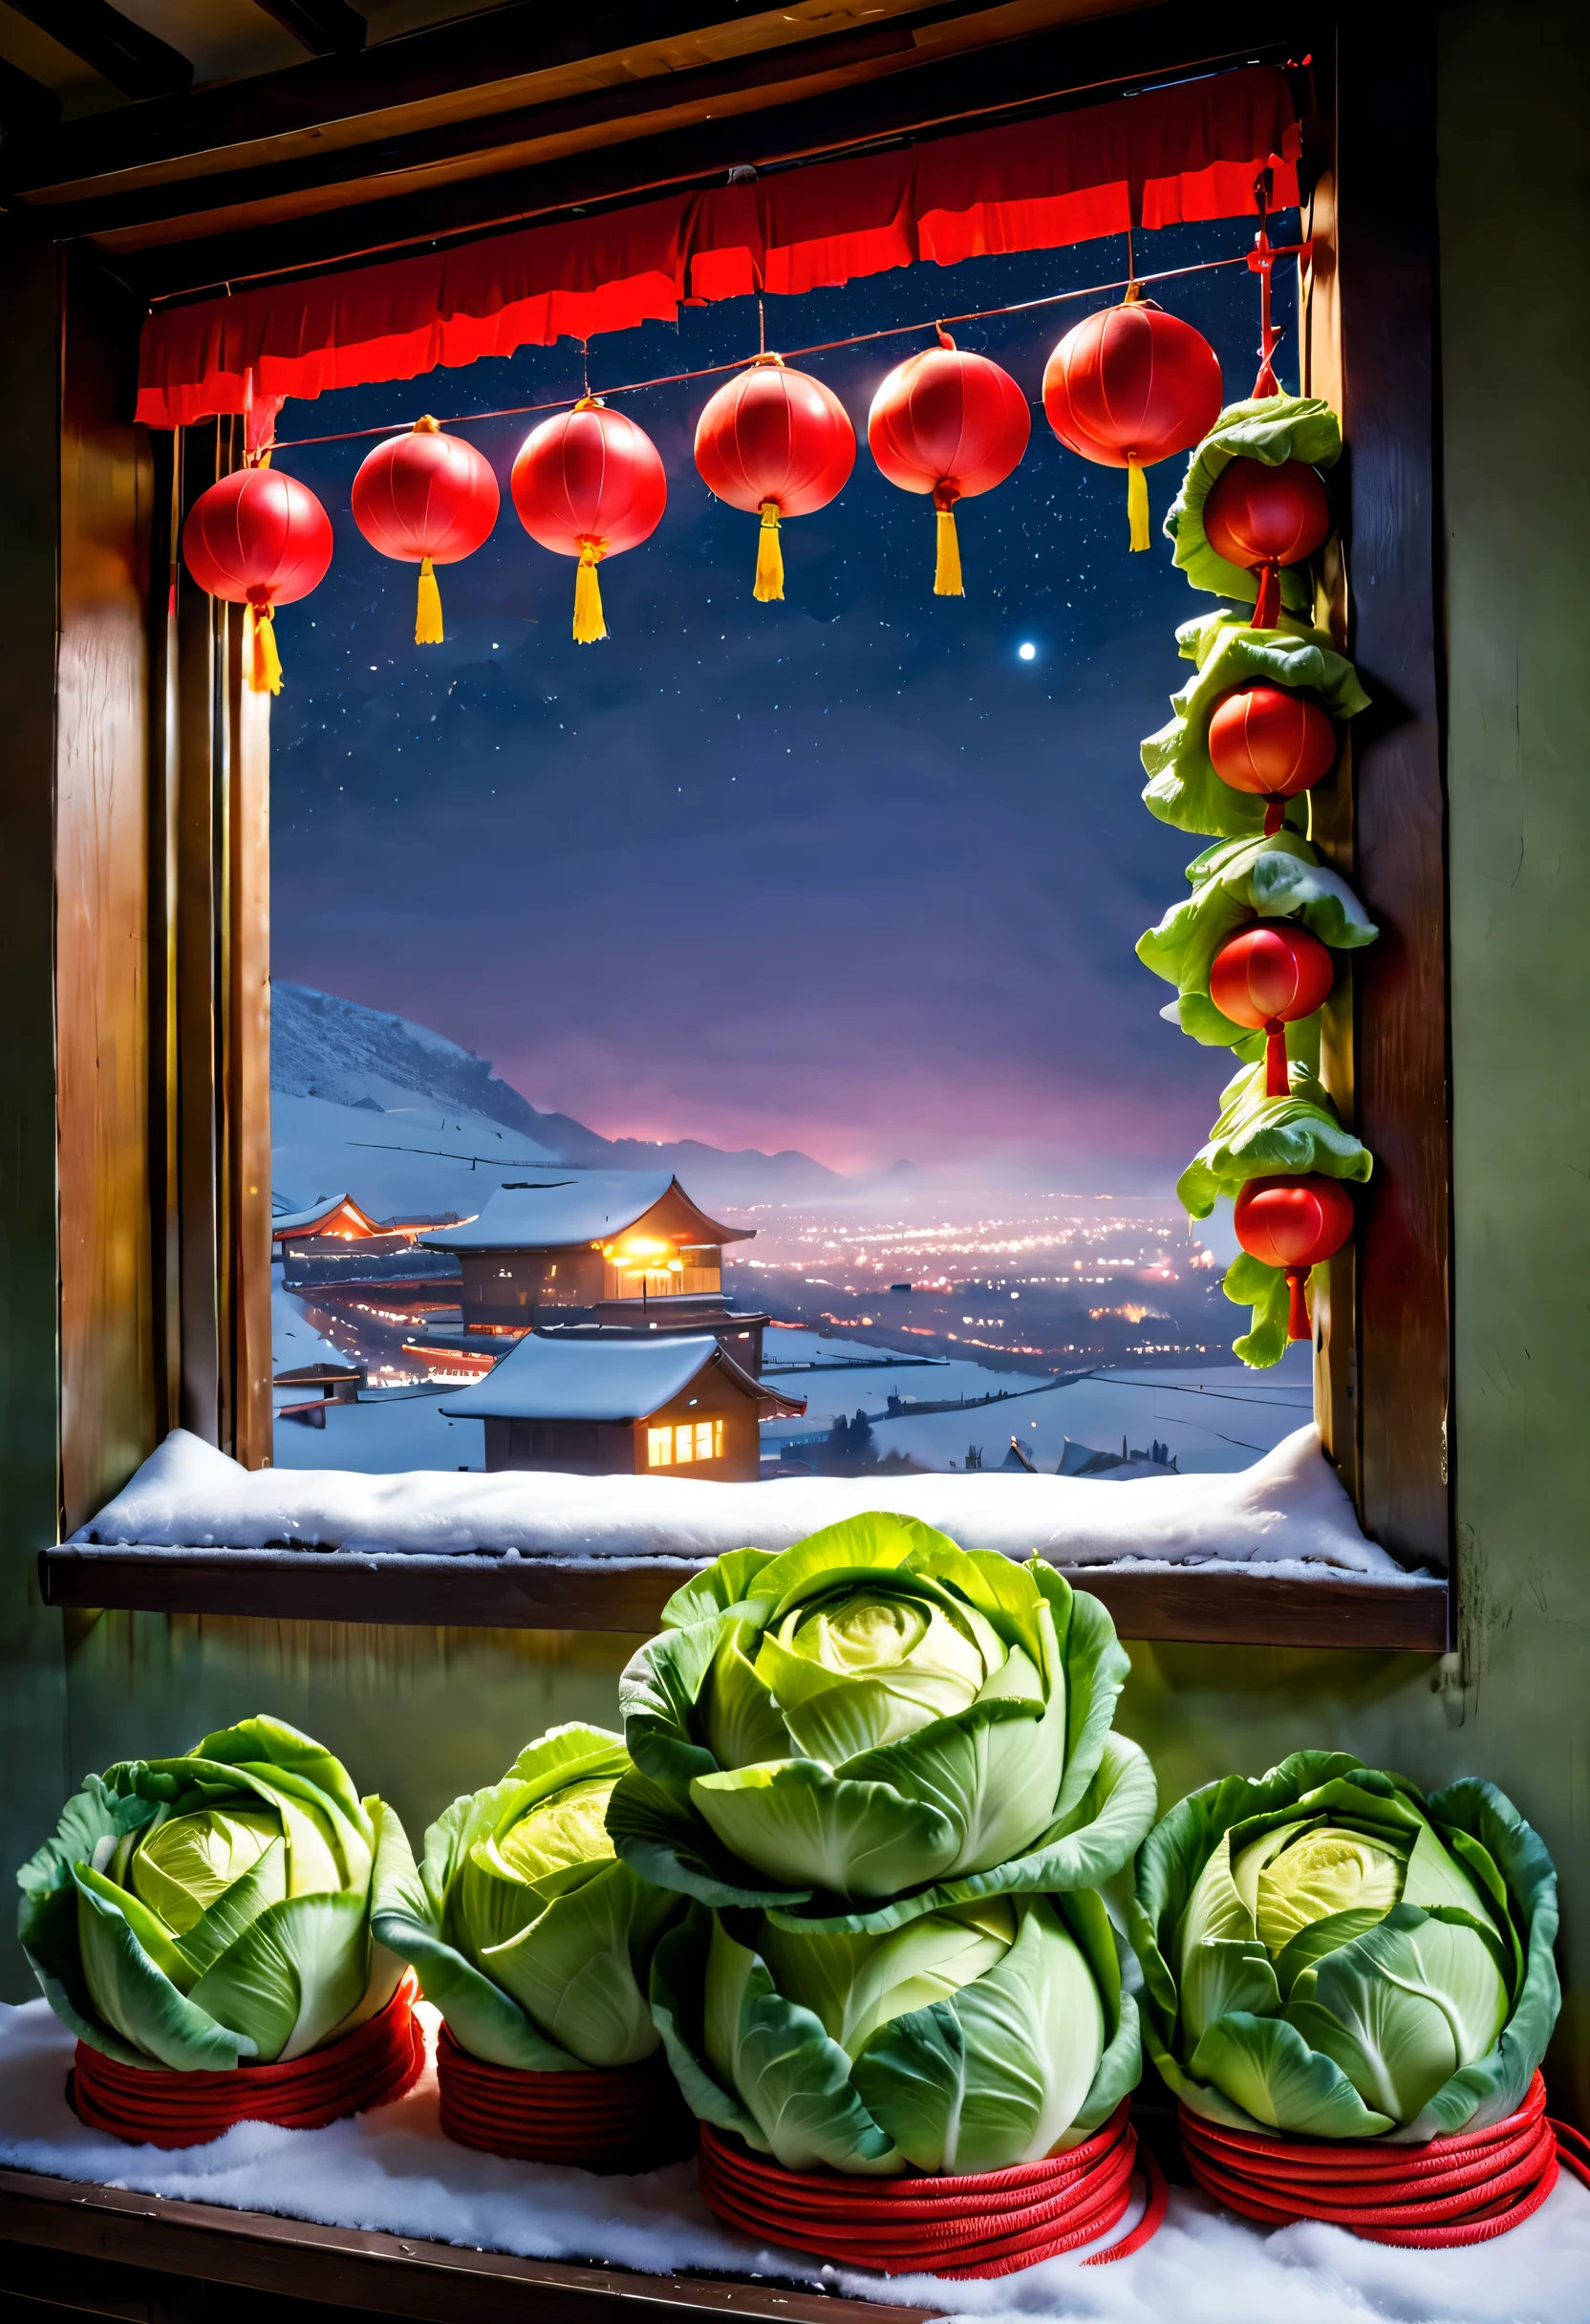 东北乡村雪景 夜晚烟花绽放, (窗台上堆满了用红绳绑着的东北白菜.),